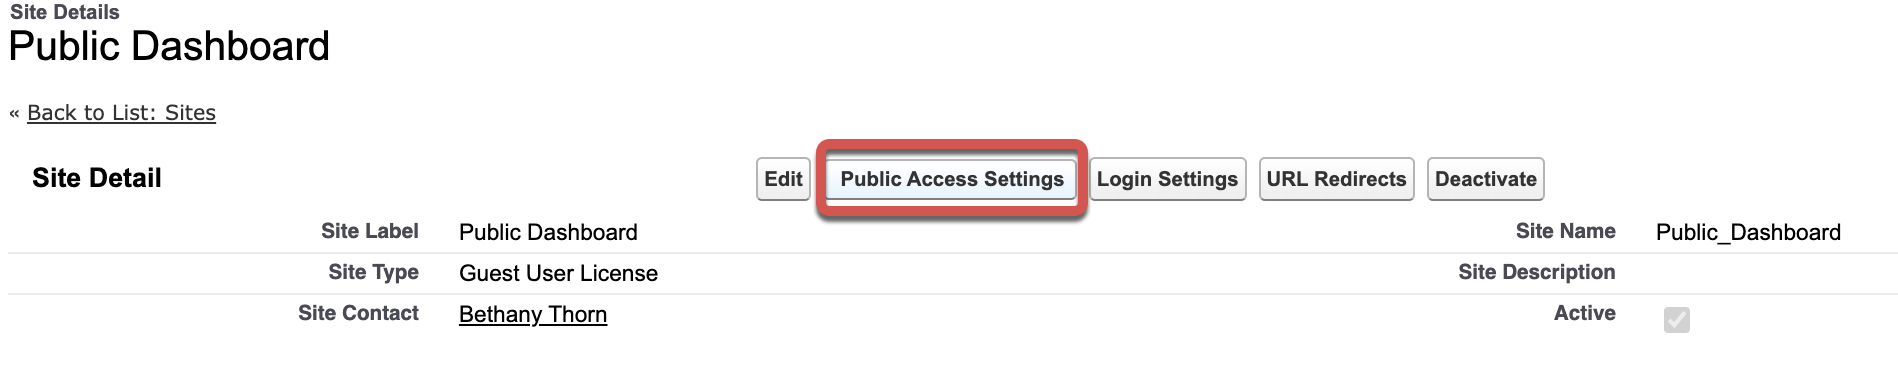 pd_public_access_button.png